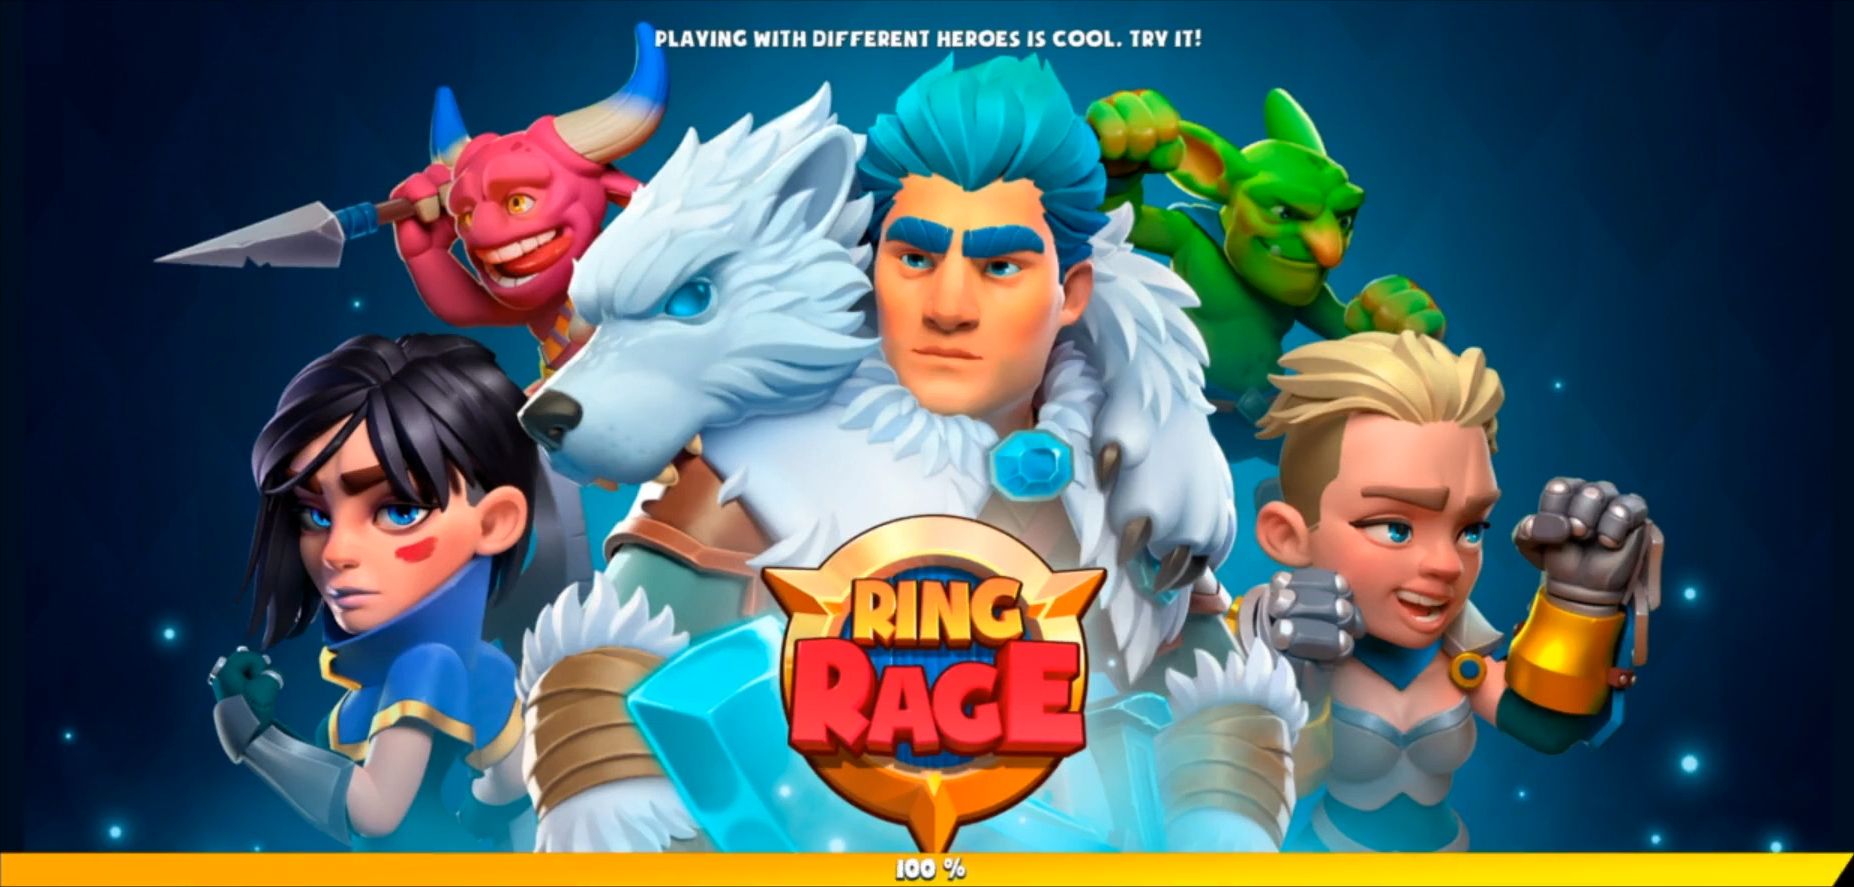 Descargar Ring Rage - Magic Battle Arena gratis para Android.